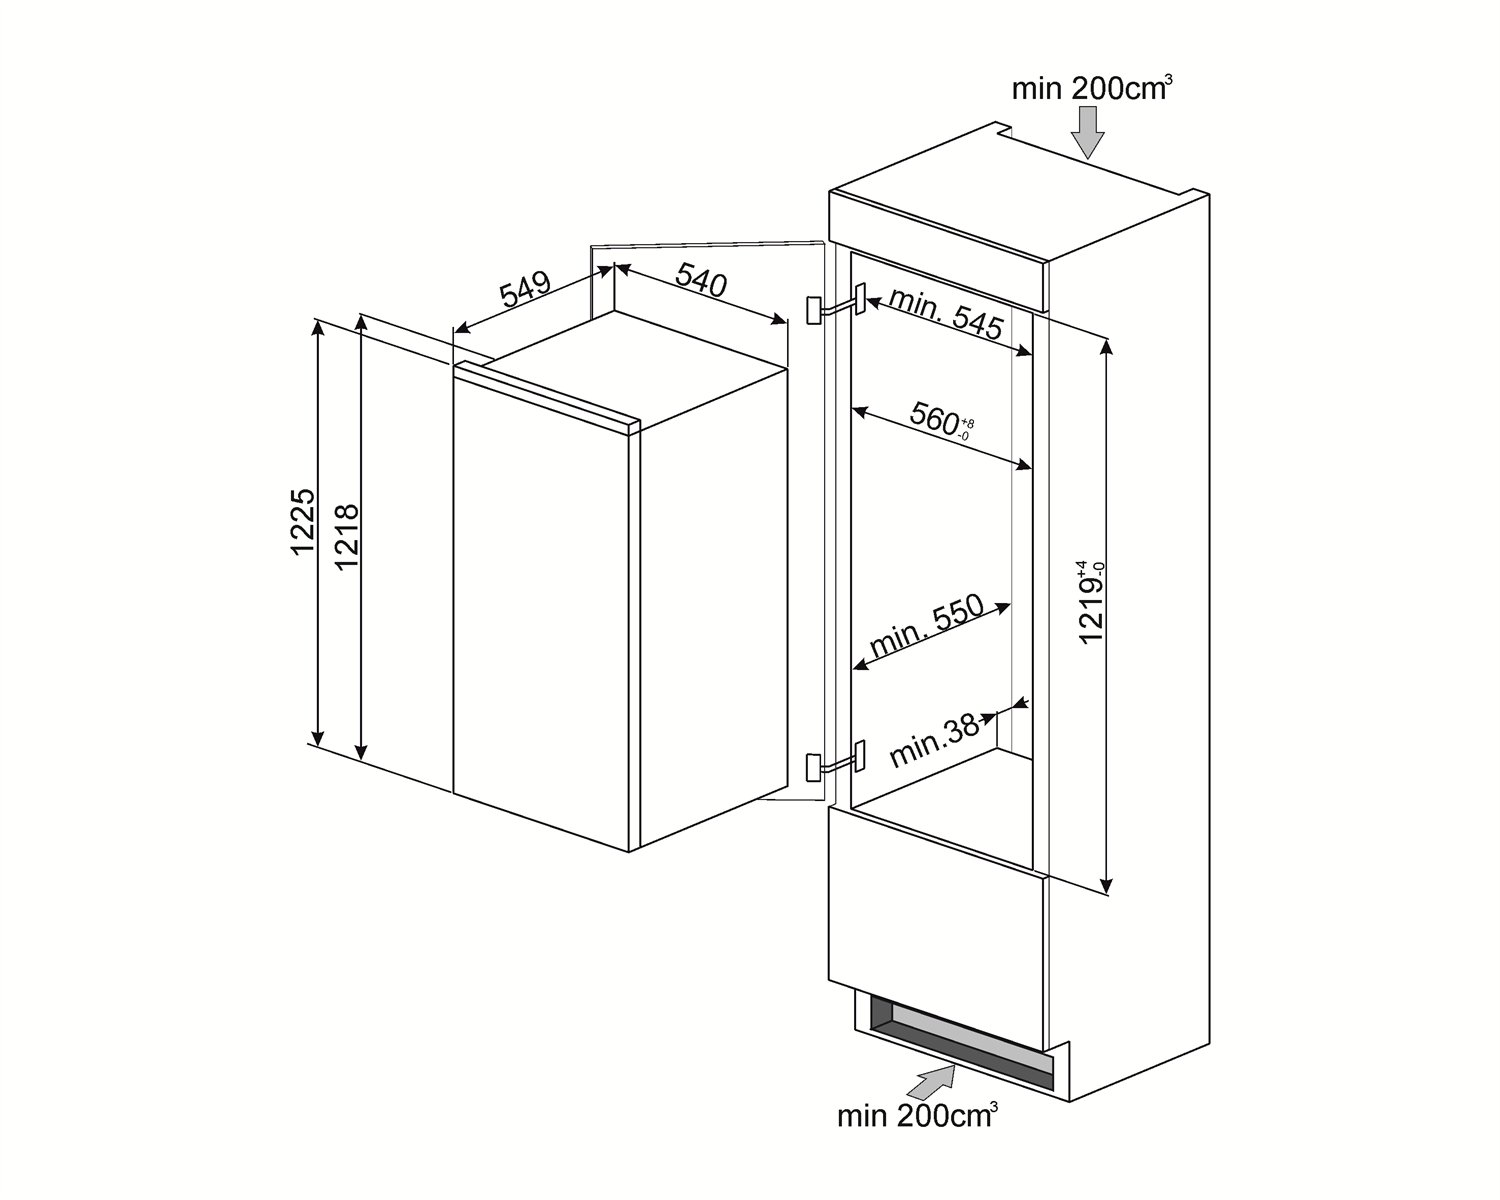 Maattekening SMEG koelkast inbouw S7212LS2P1